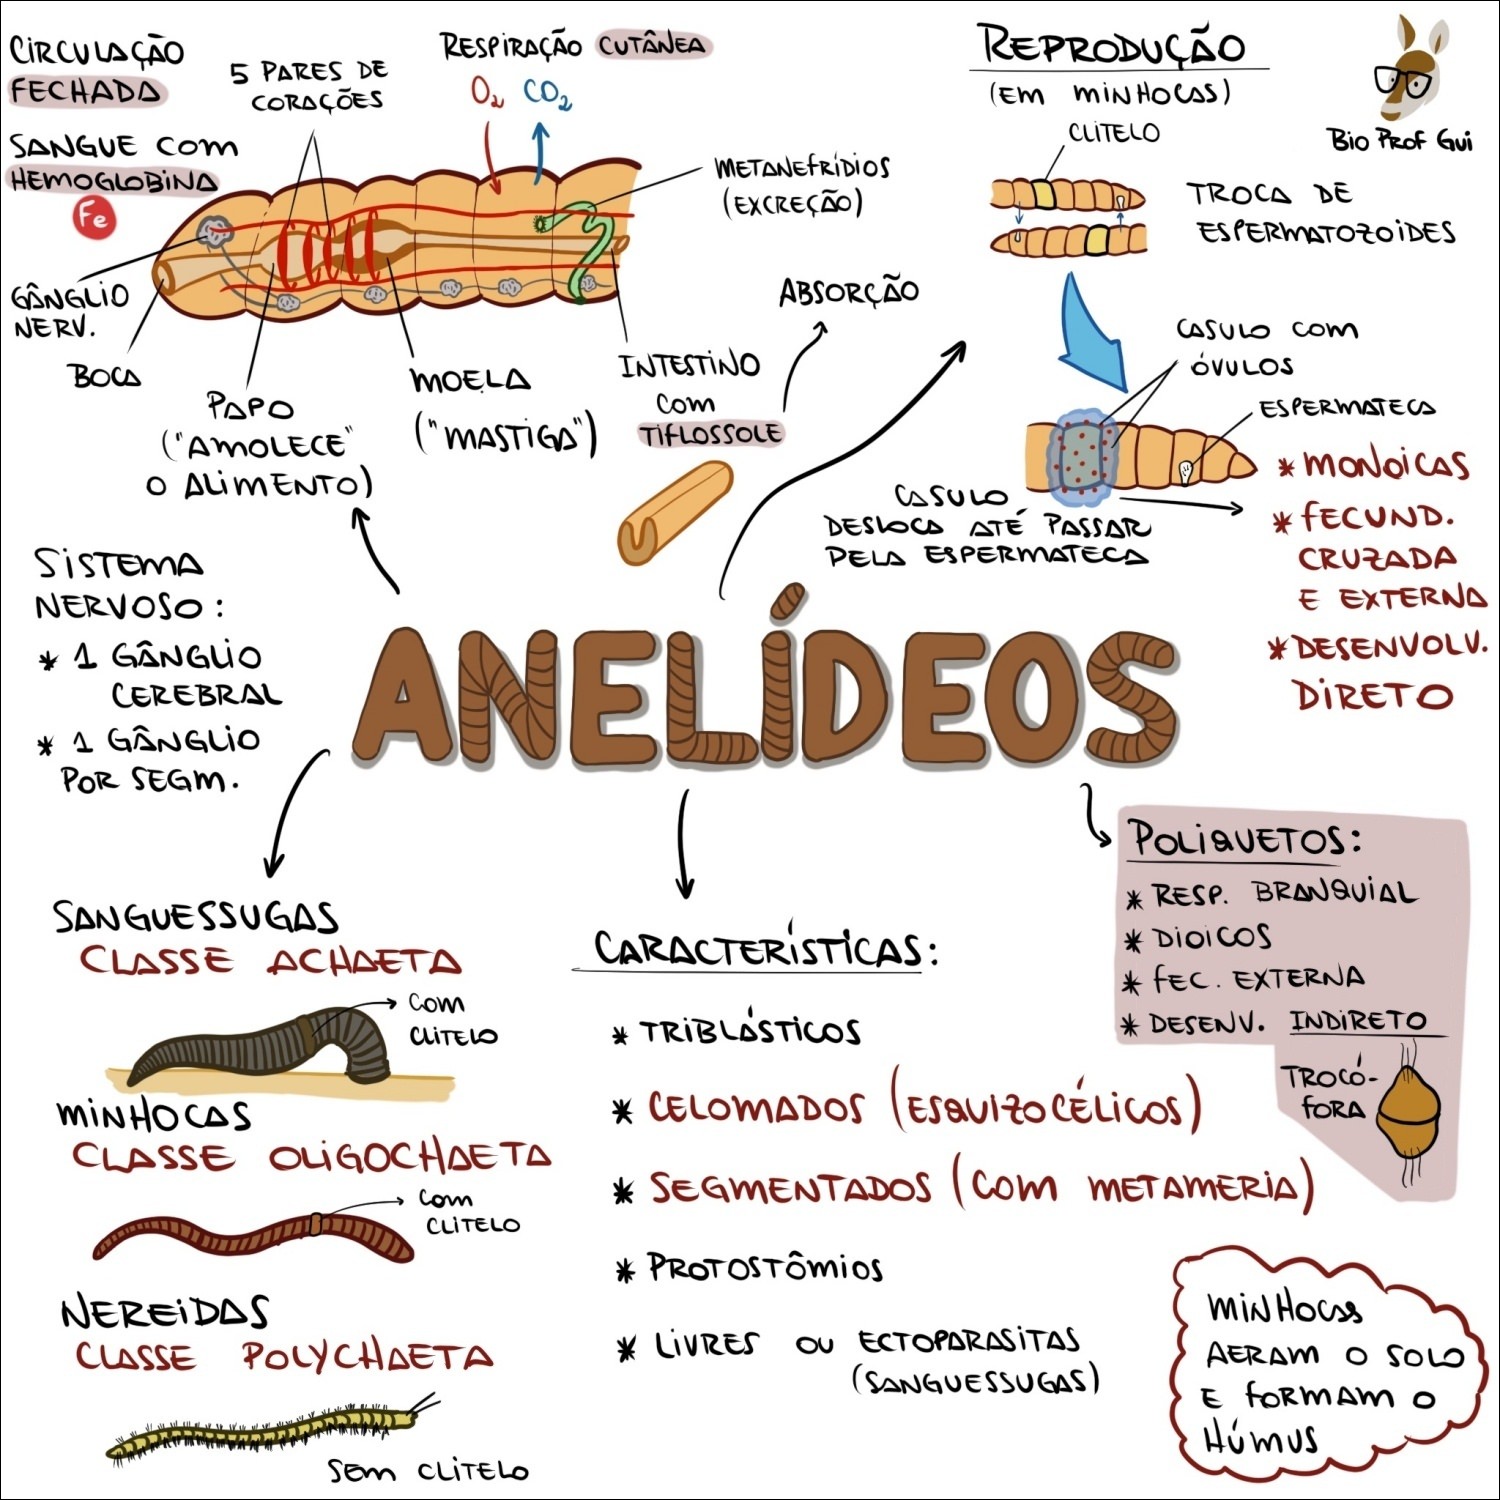 Anatomia e fisiologia dos anelídeos